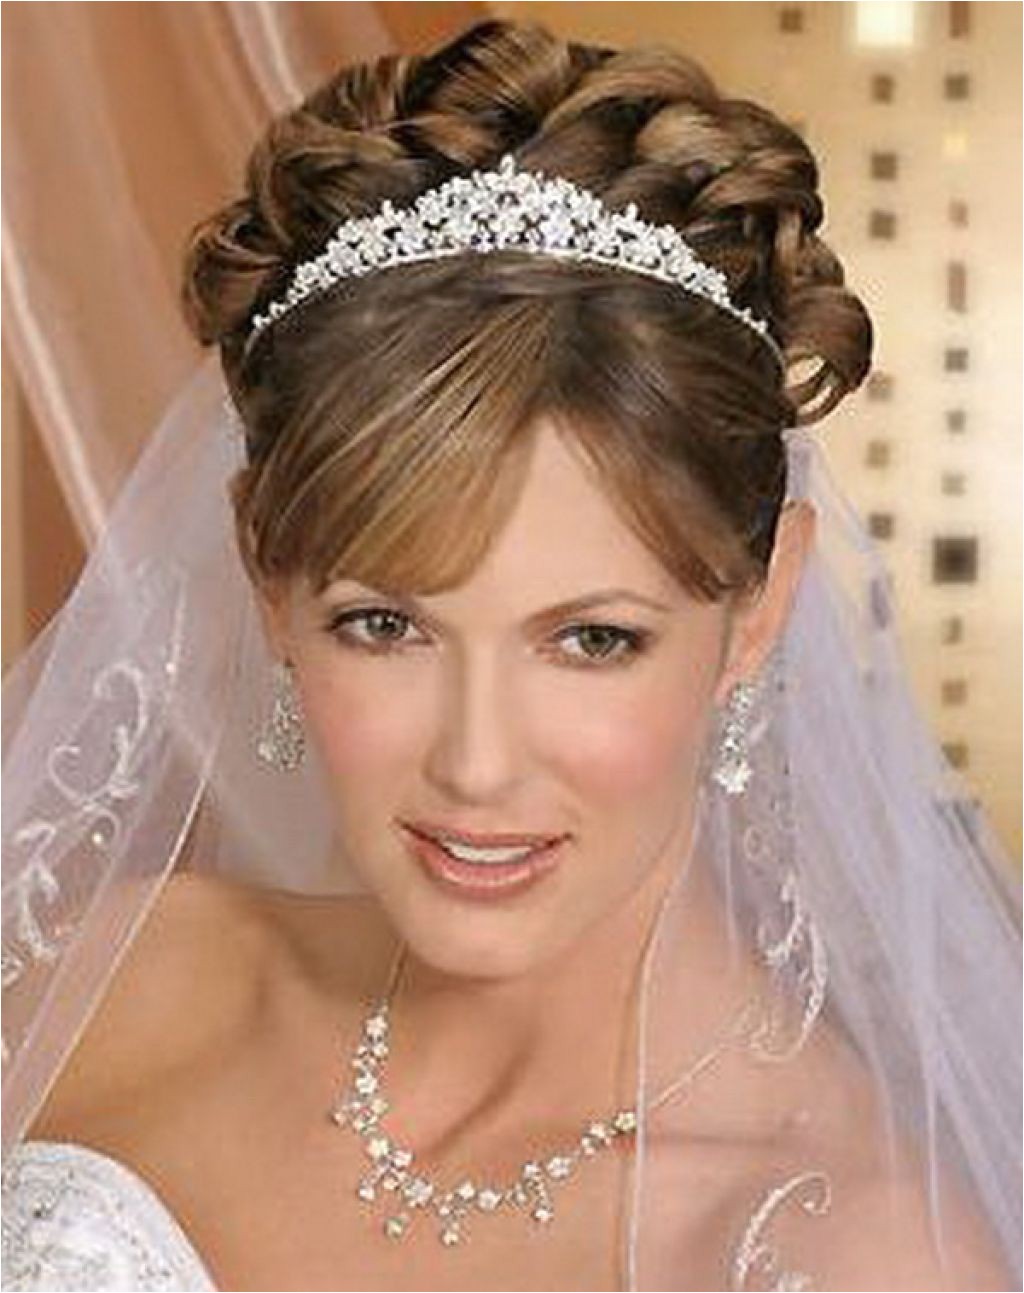 Wedding Hairstyles with A Tiara Tiara Wedding Hairstyles Ideas for Brides Hairzstyle